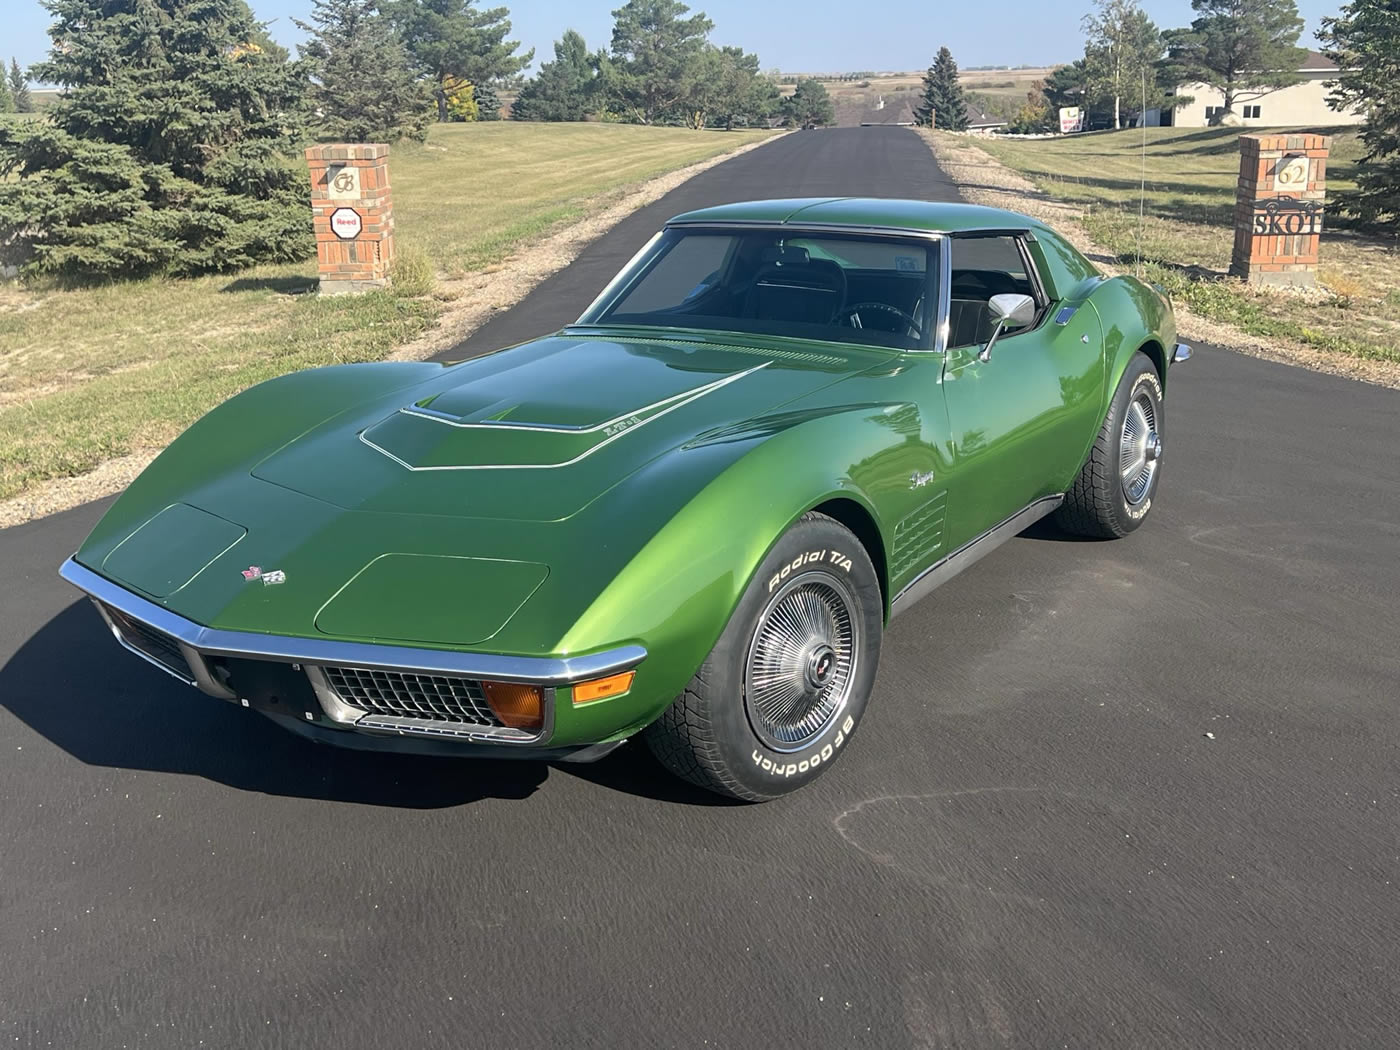 1972 Corvette LT-1 Coupe in Elkhart Green